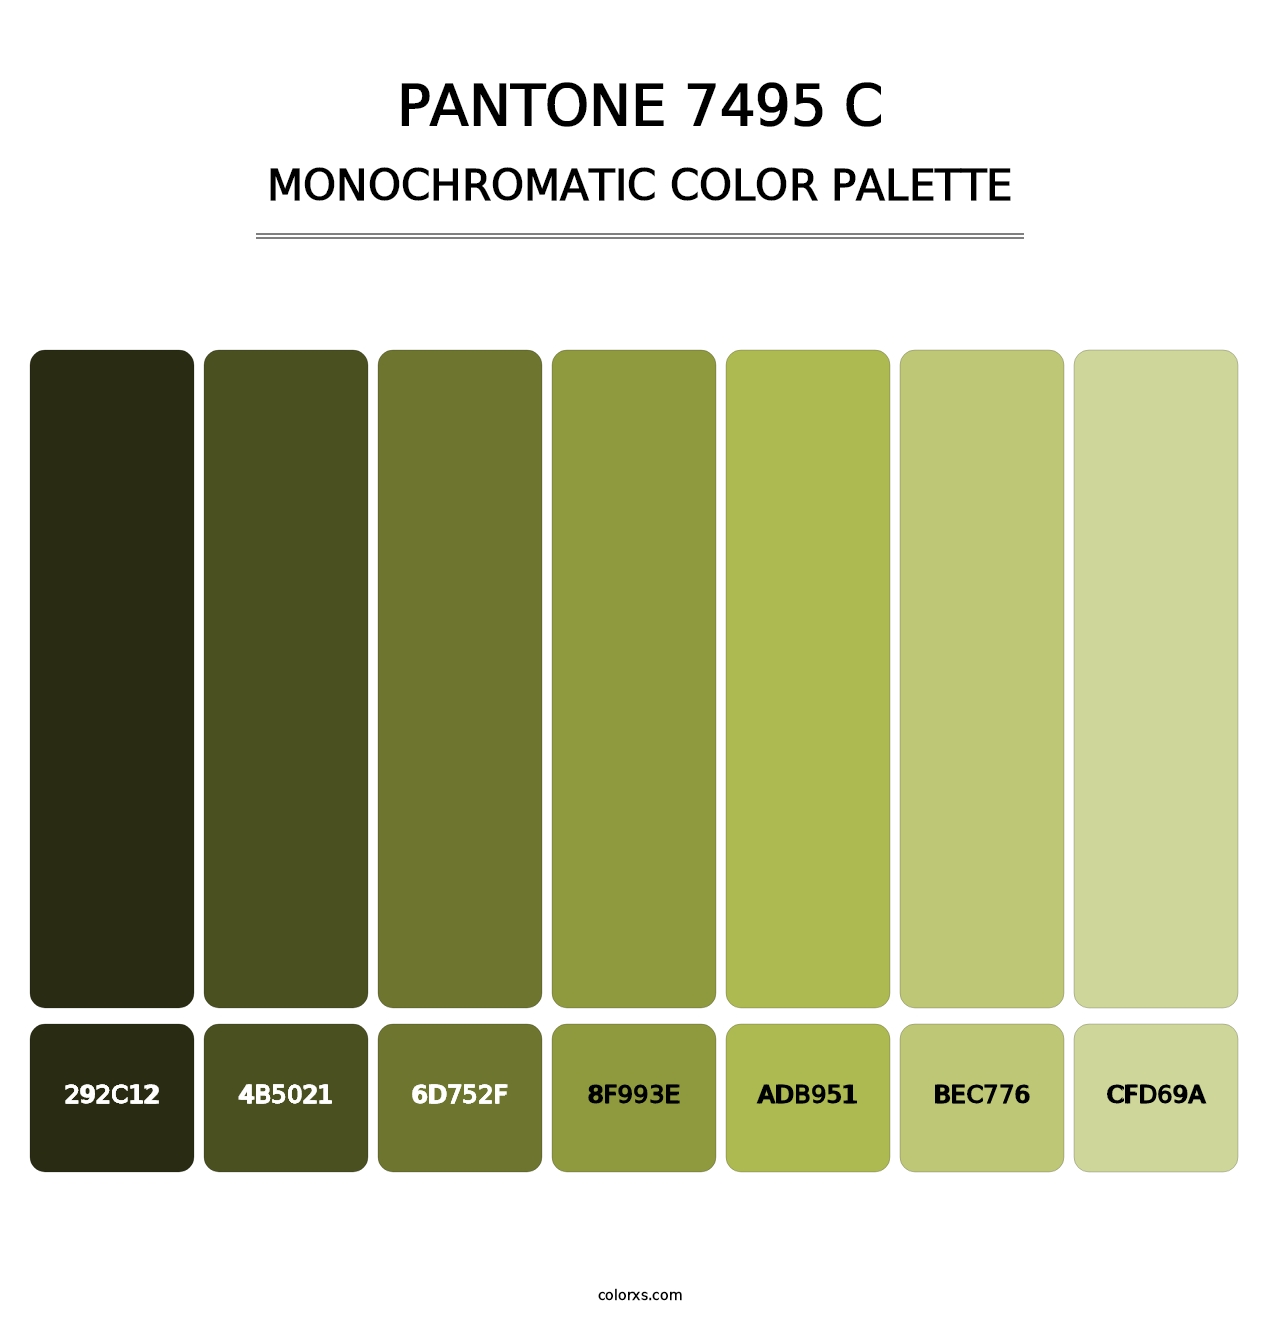 PANTONE 7495 C - Monochromatic Color Palette